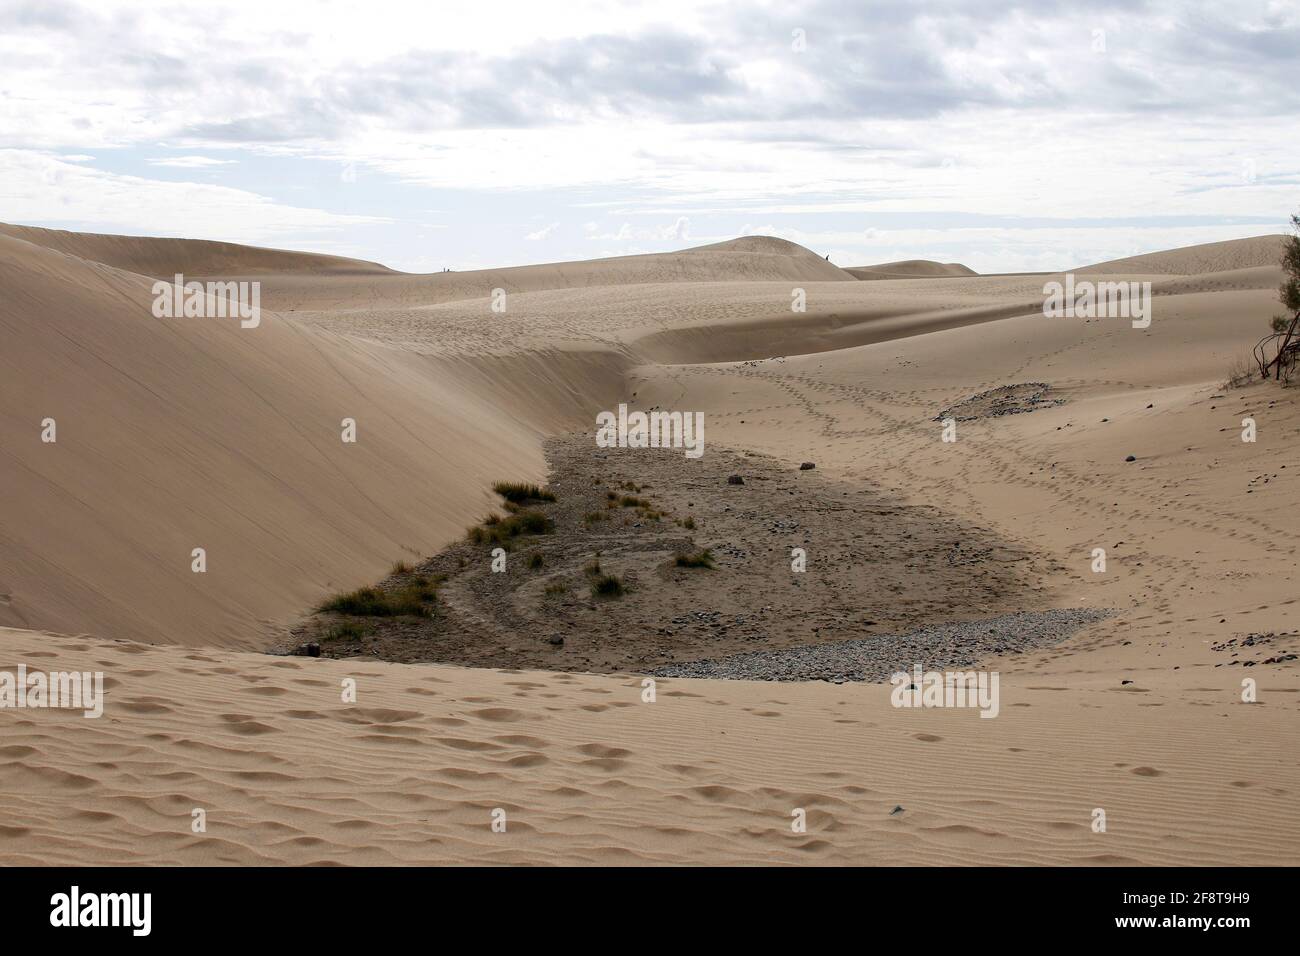 Impressionen: Duenen von Maspalomas/ Playa del Ingles, Gran Canaria, Kanarische Inseln, Spanien/ impressions: dunes of Maspalomas/ Playa del Ingles, G Stock Photo